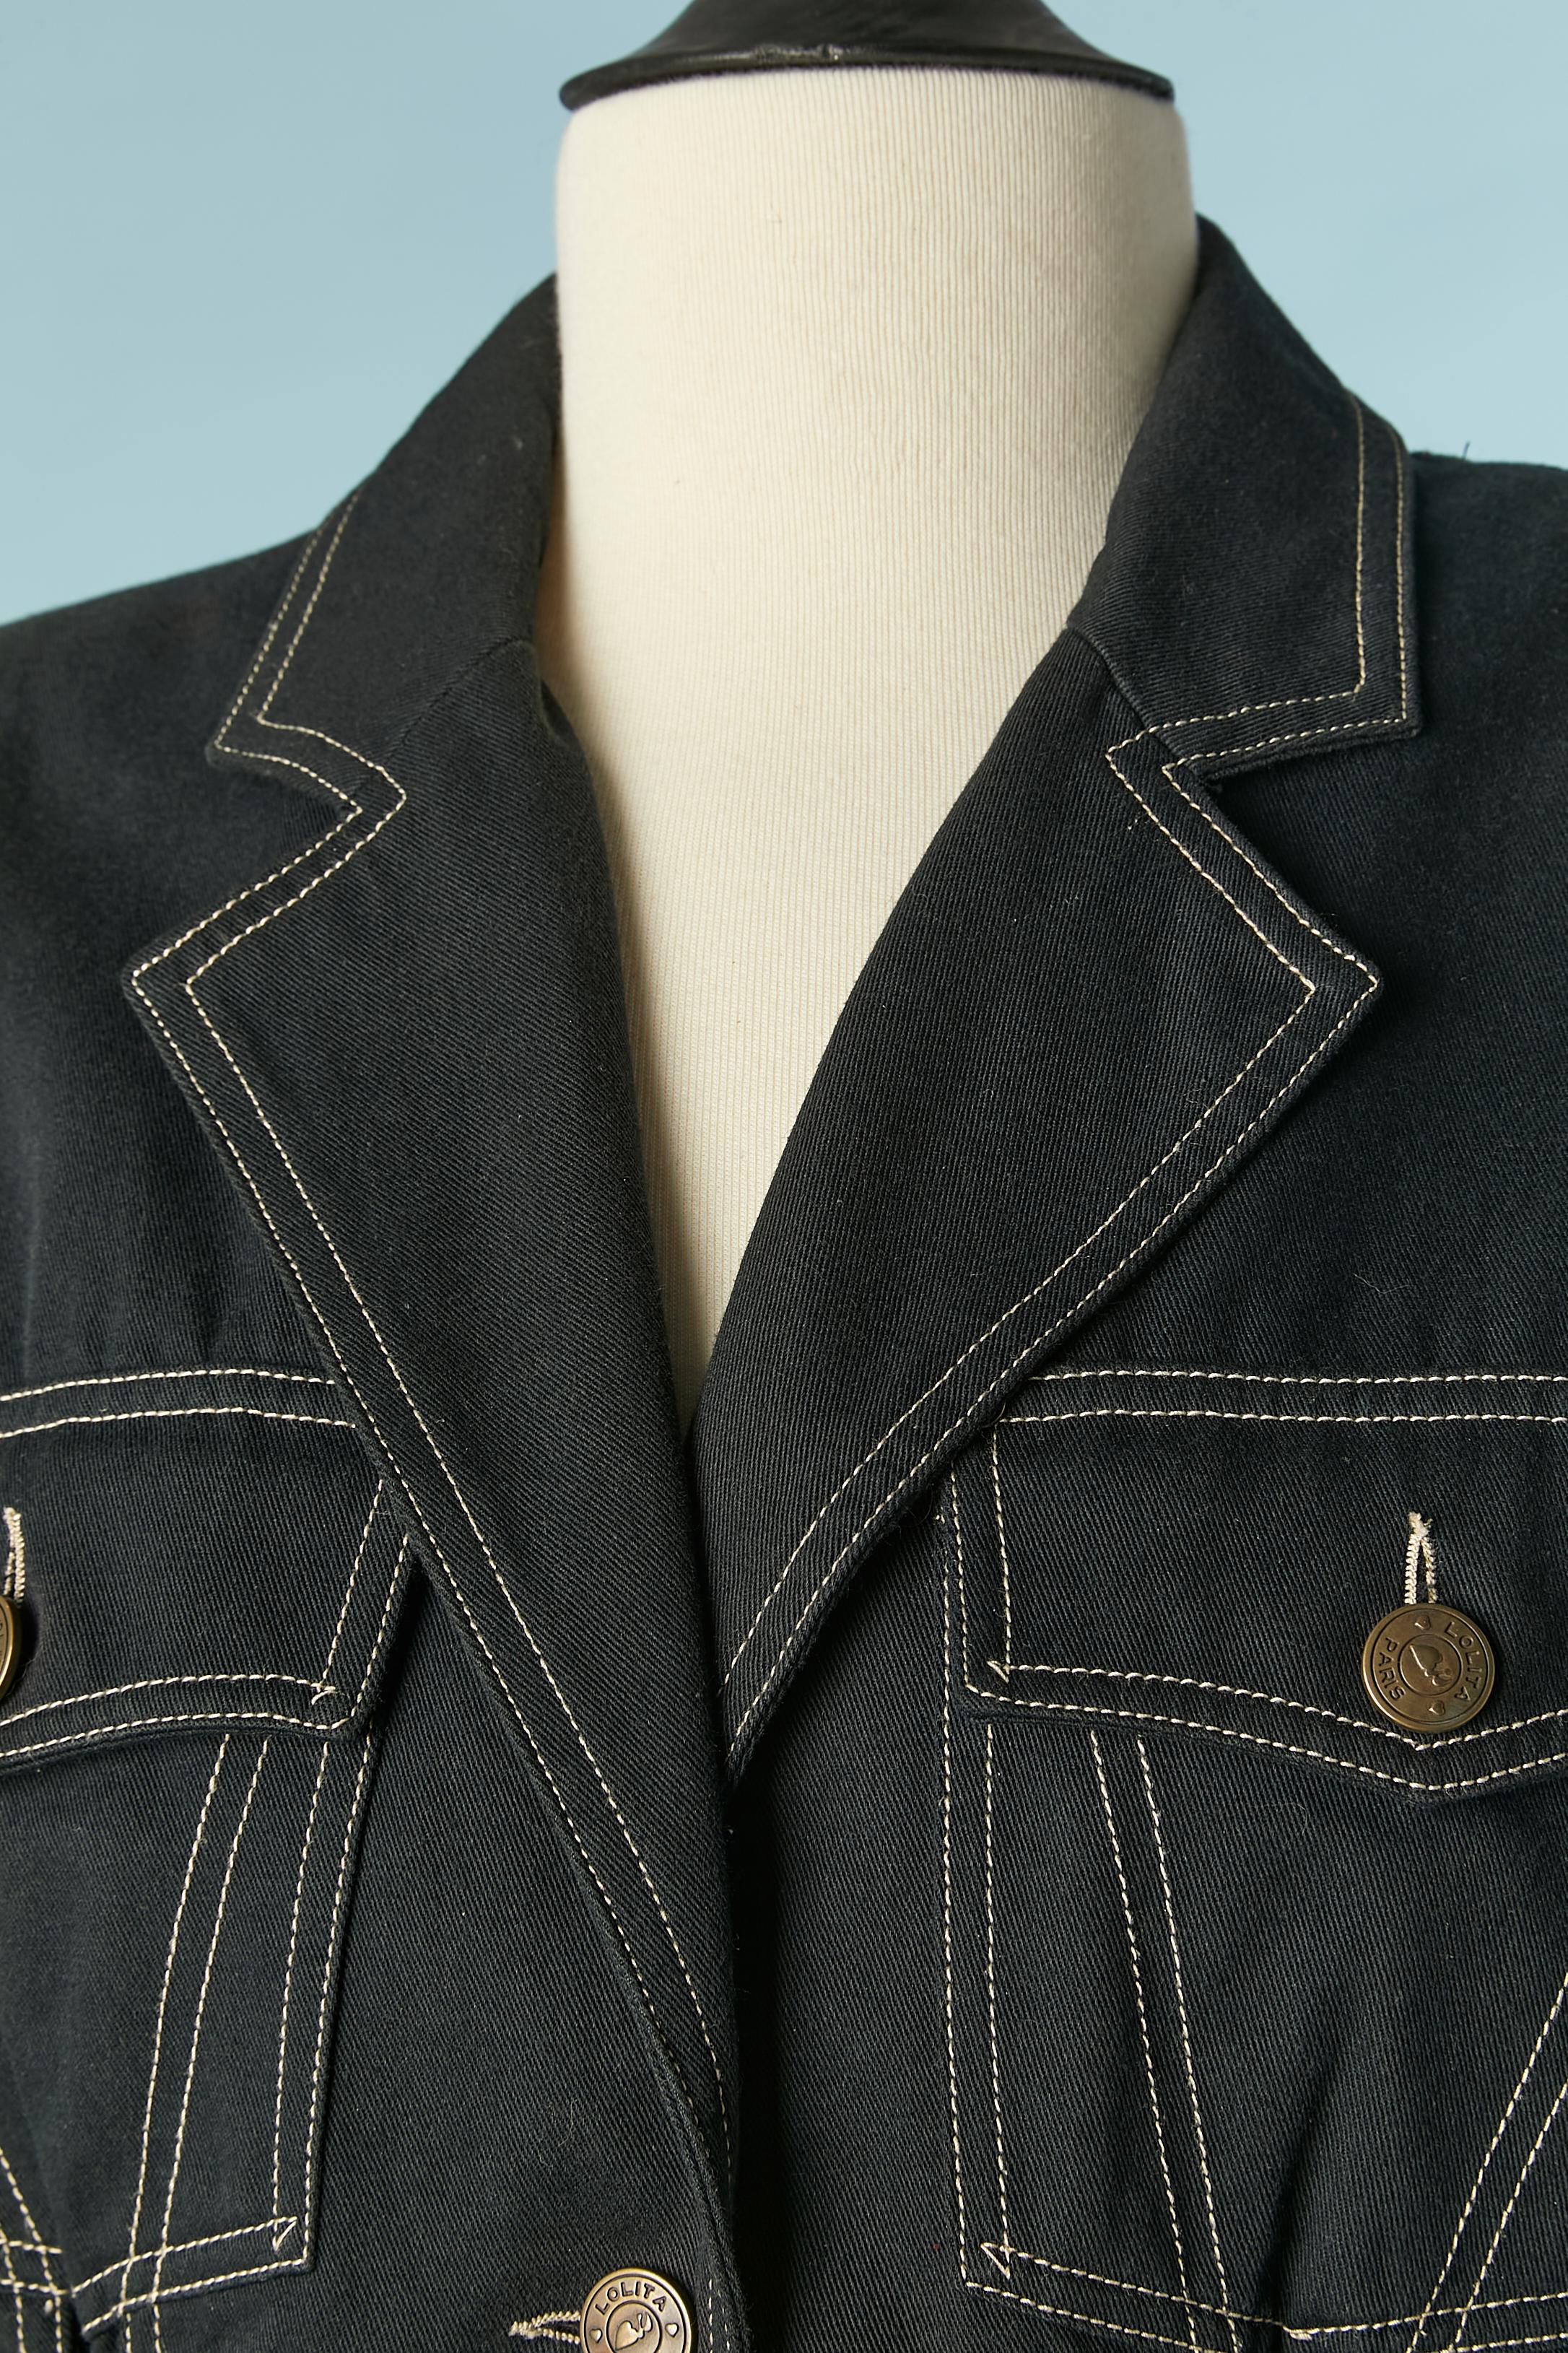 Veste en coton bleu marine foncé à simple boutonnage avec lacets sur le devant et au milieu du dos. Surpiqûres blanches, boutons et épaulettes de marque. 
TAILLE 42 (Fr) mais convient à M 